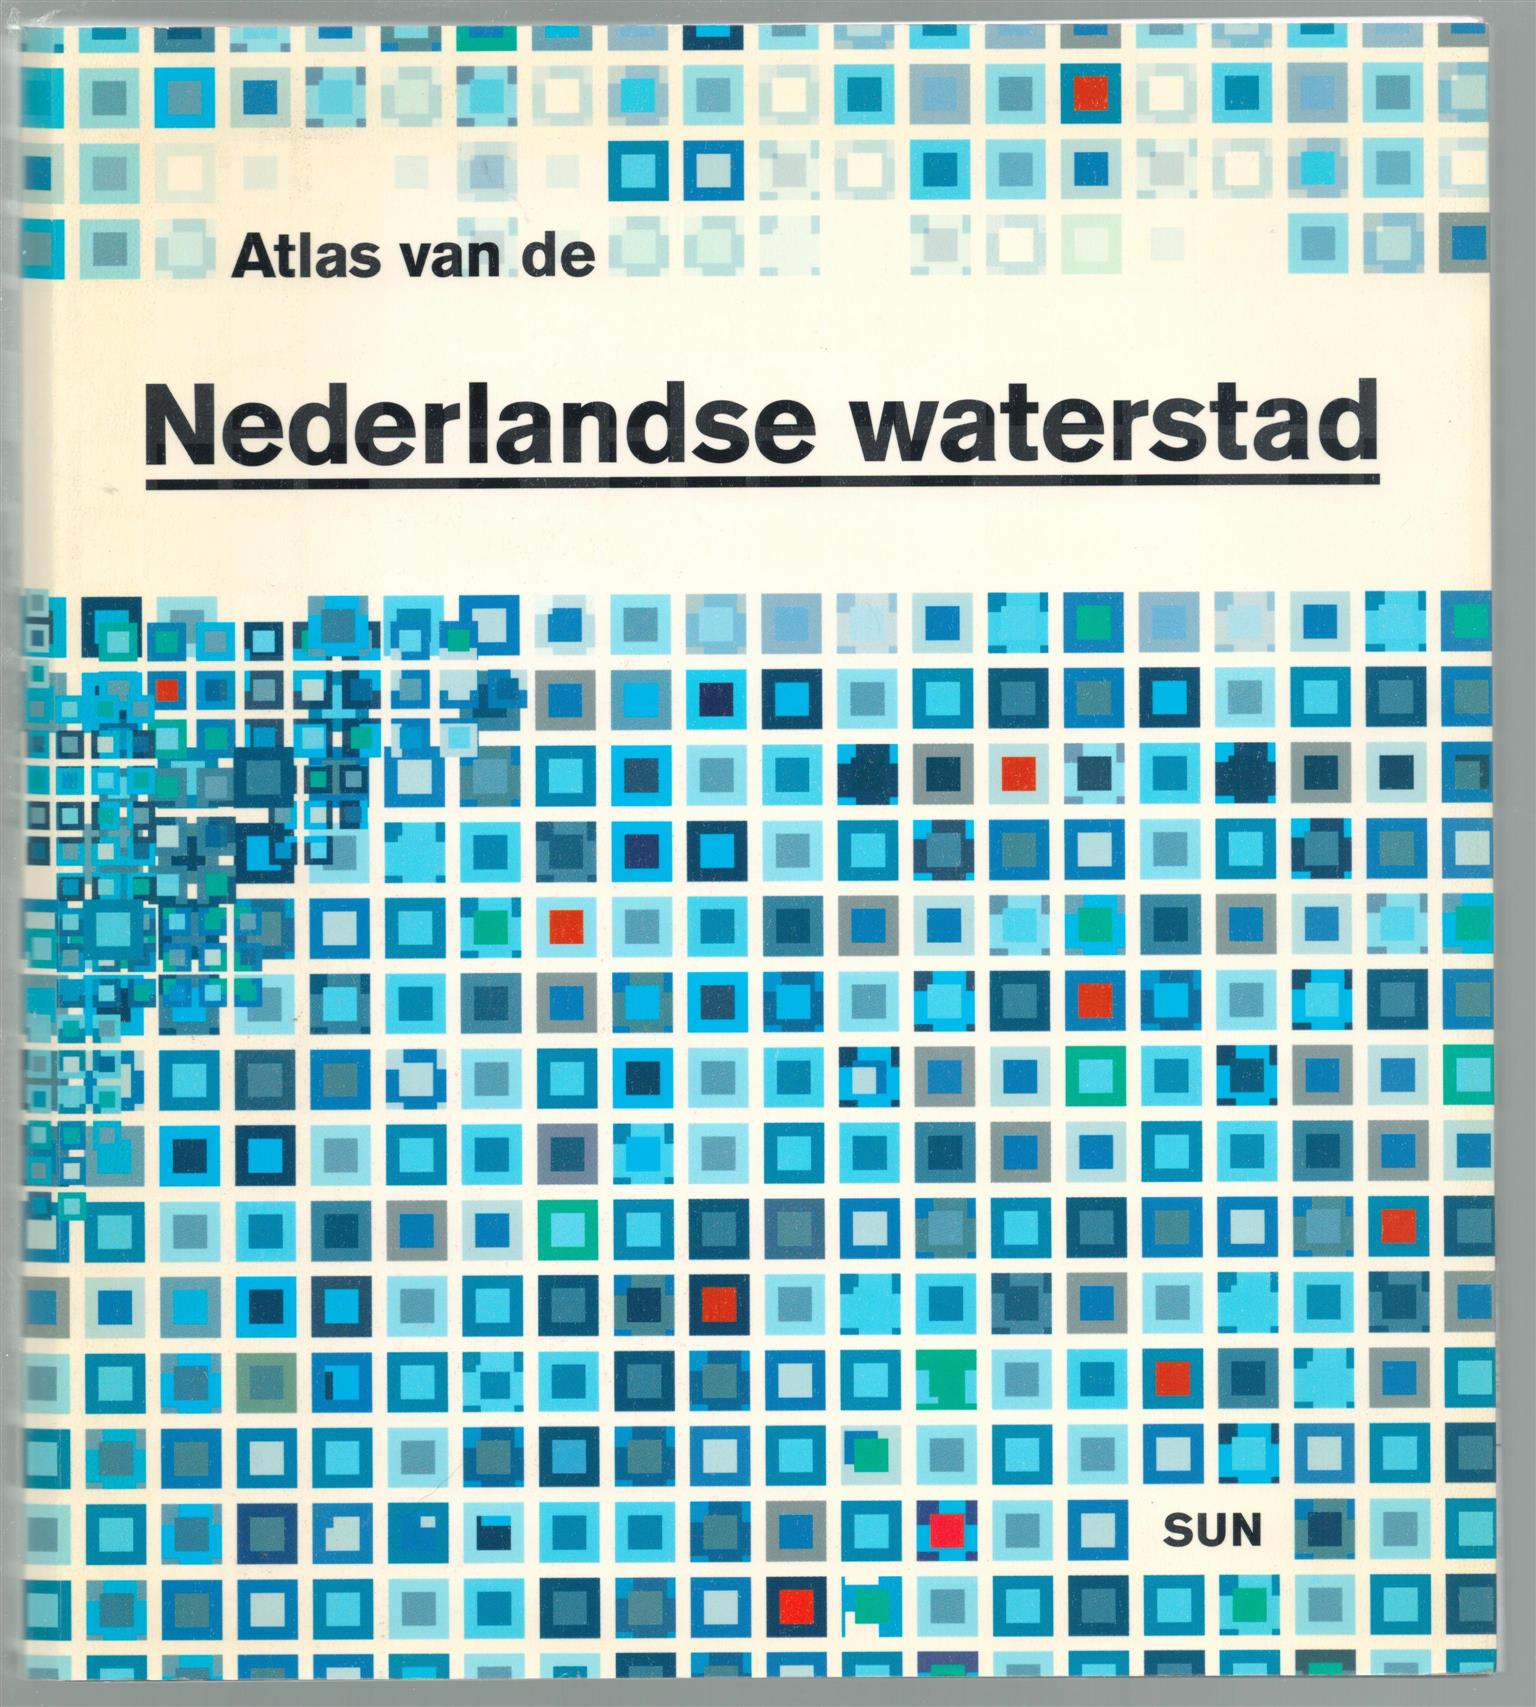 Fransje Hooimeijer - Atlas van de Nederlandse waterstad